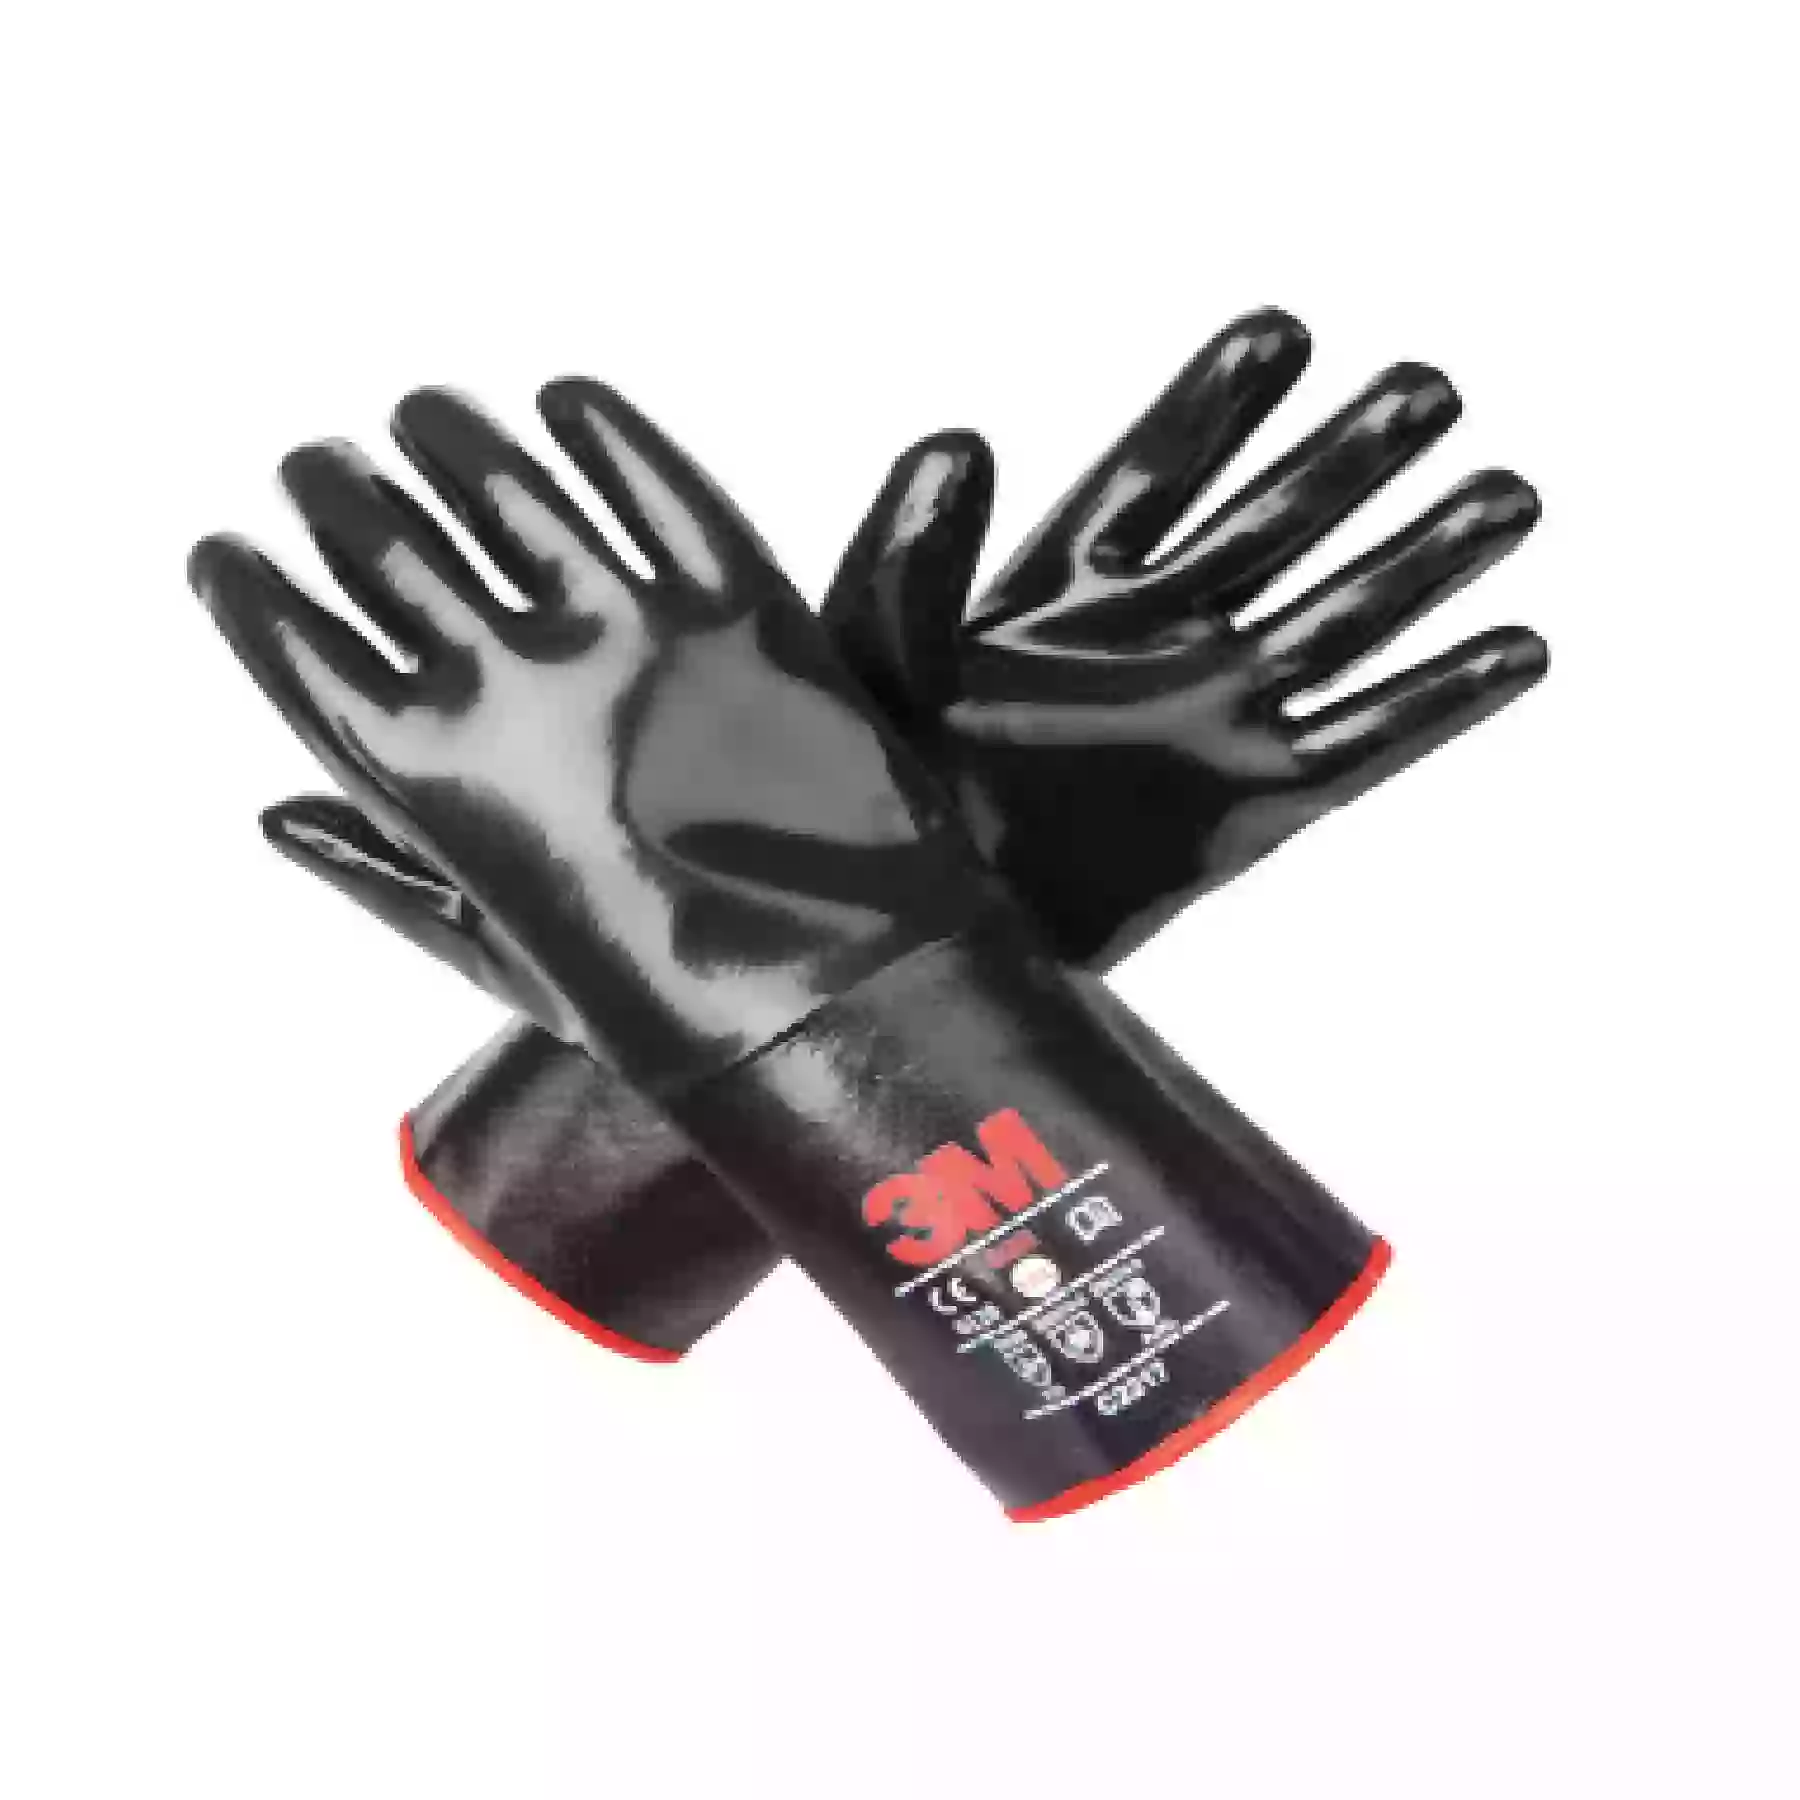 3M C2217 Neoprene Chemical Resistant Glove